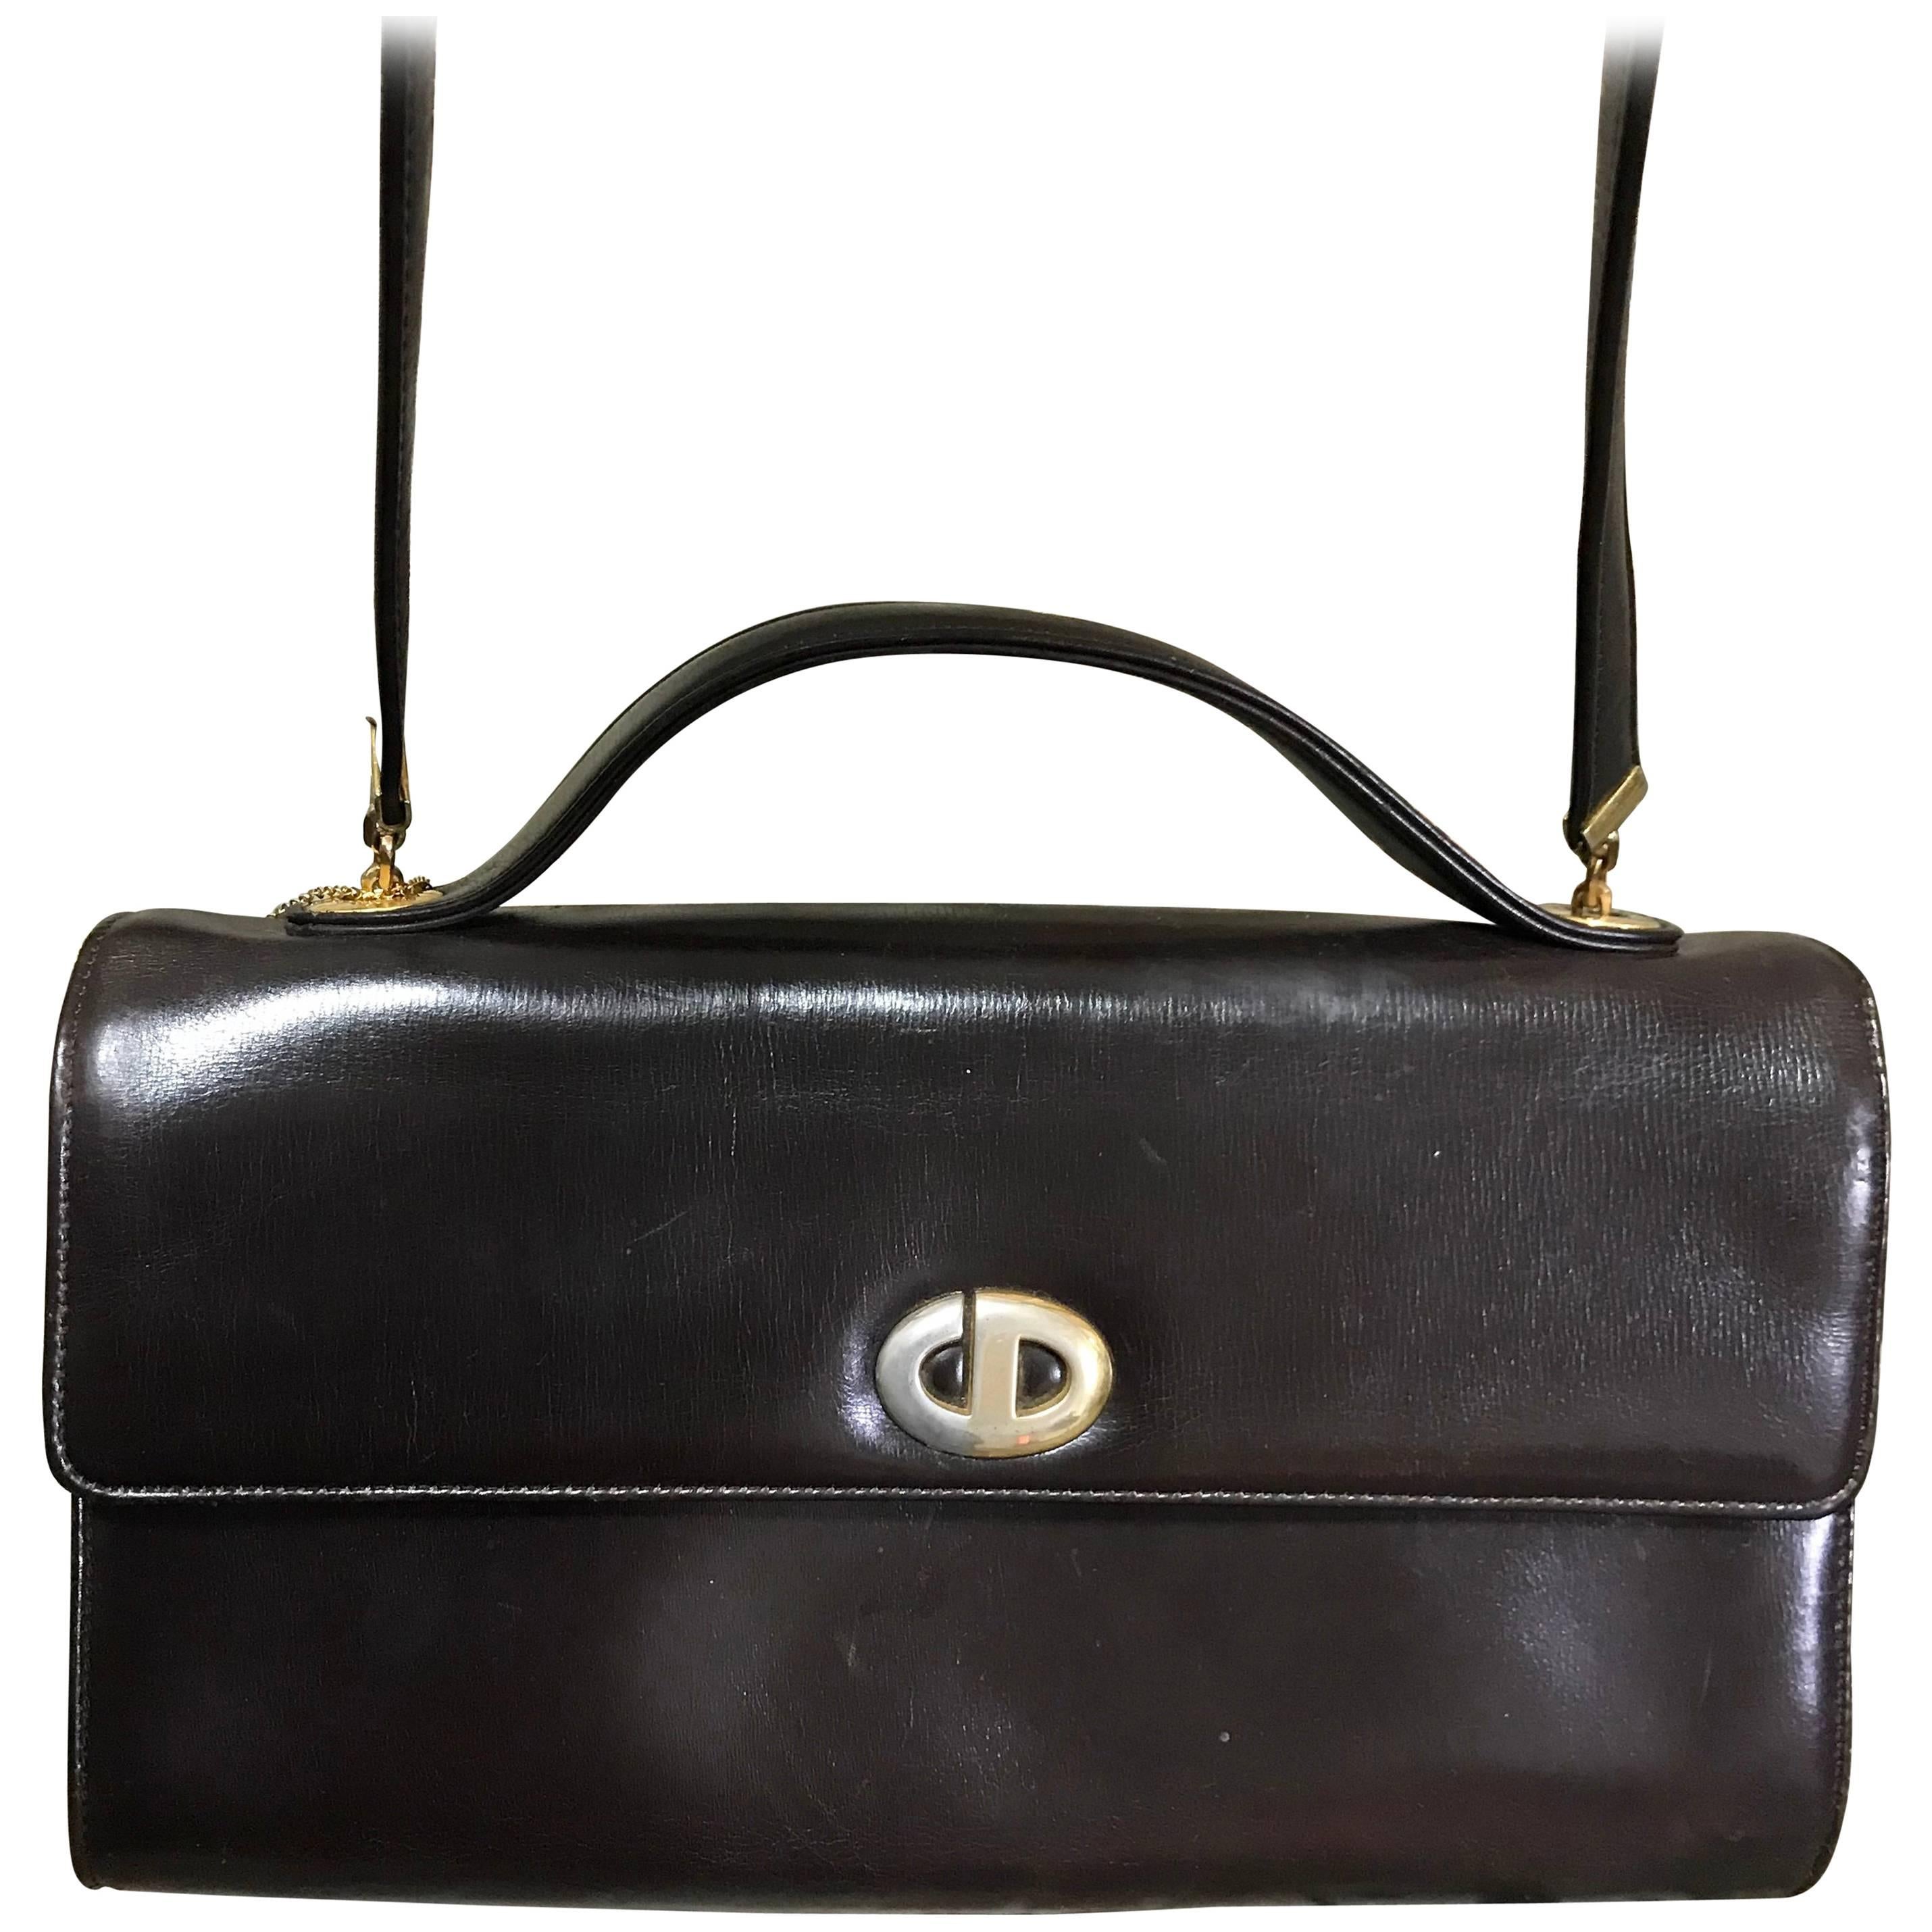 Vintage Christian Dior dark brown leather shoulder bag with CD motif and strap. For Sale